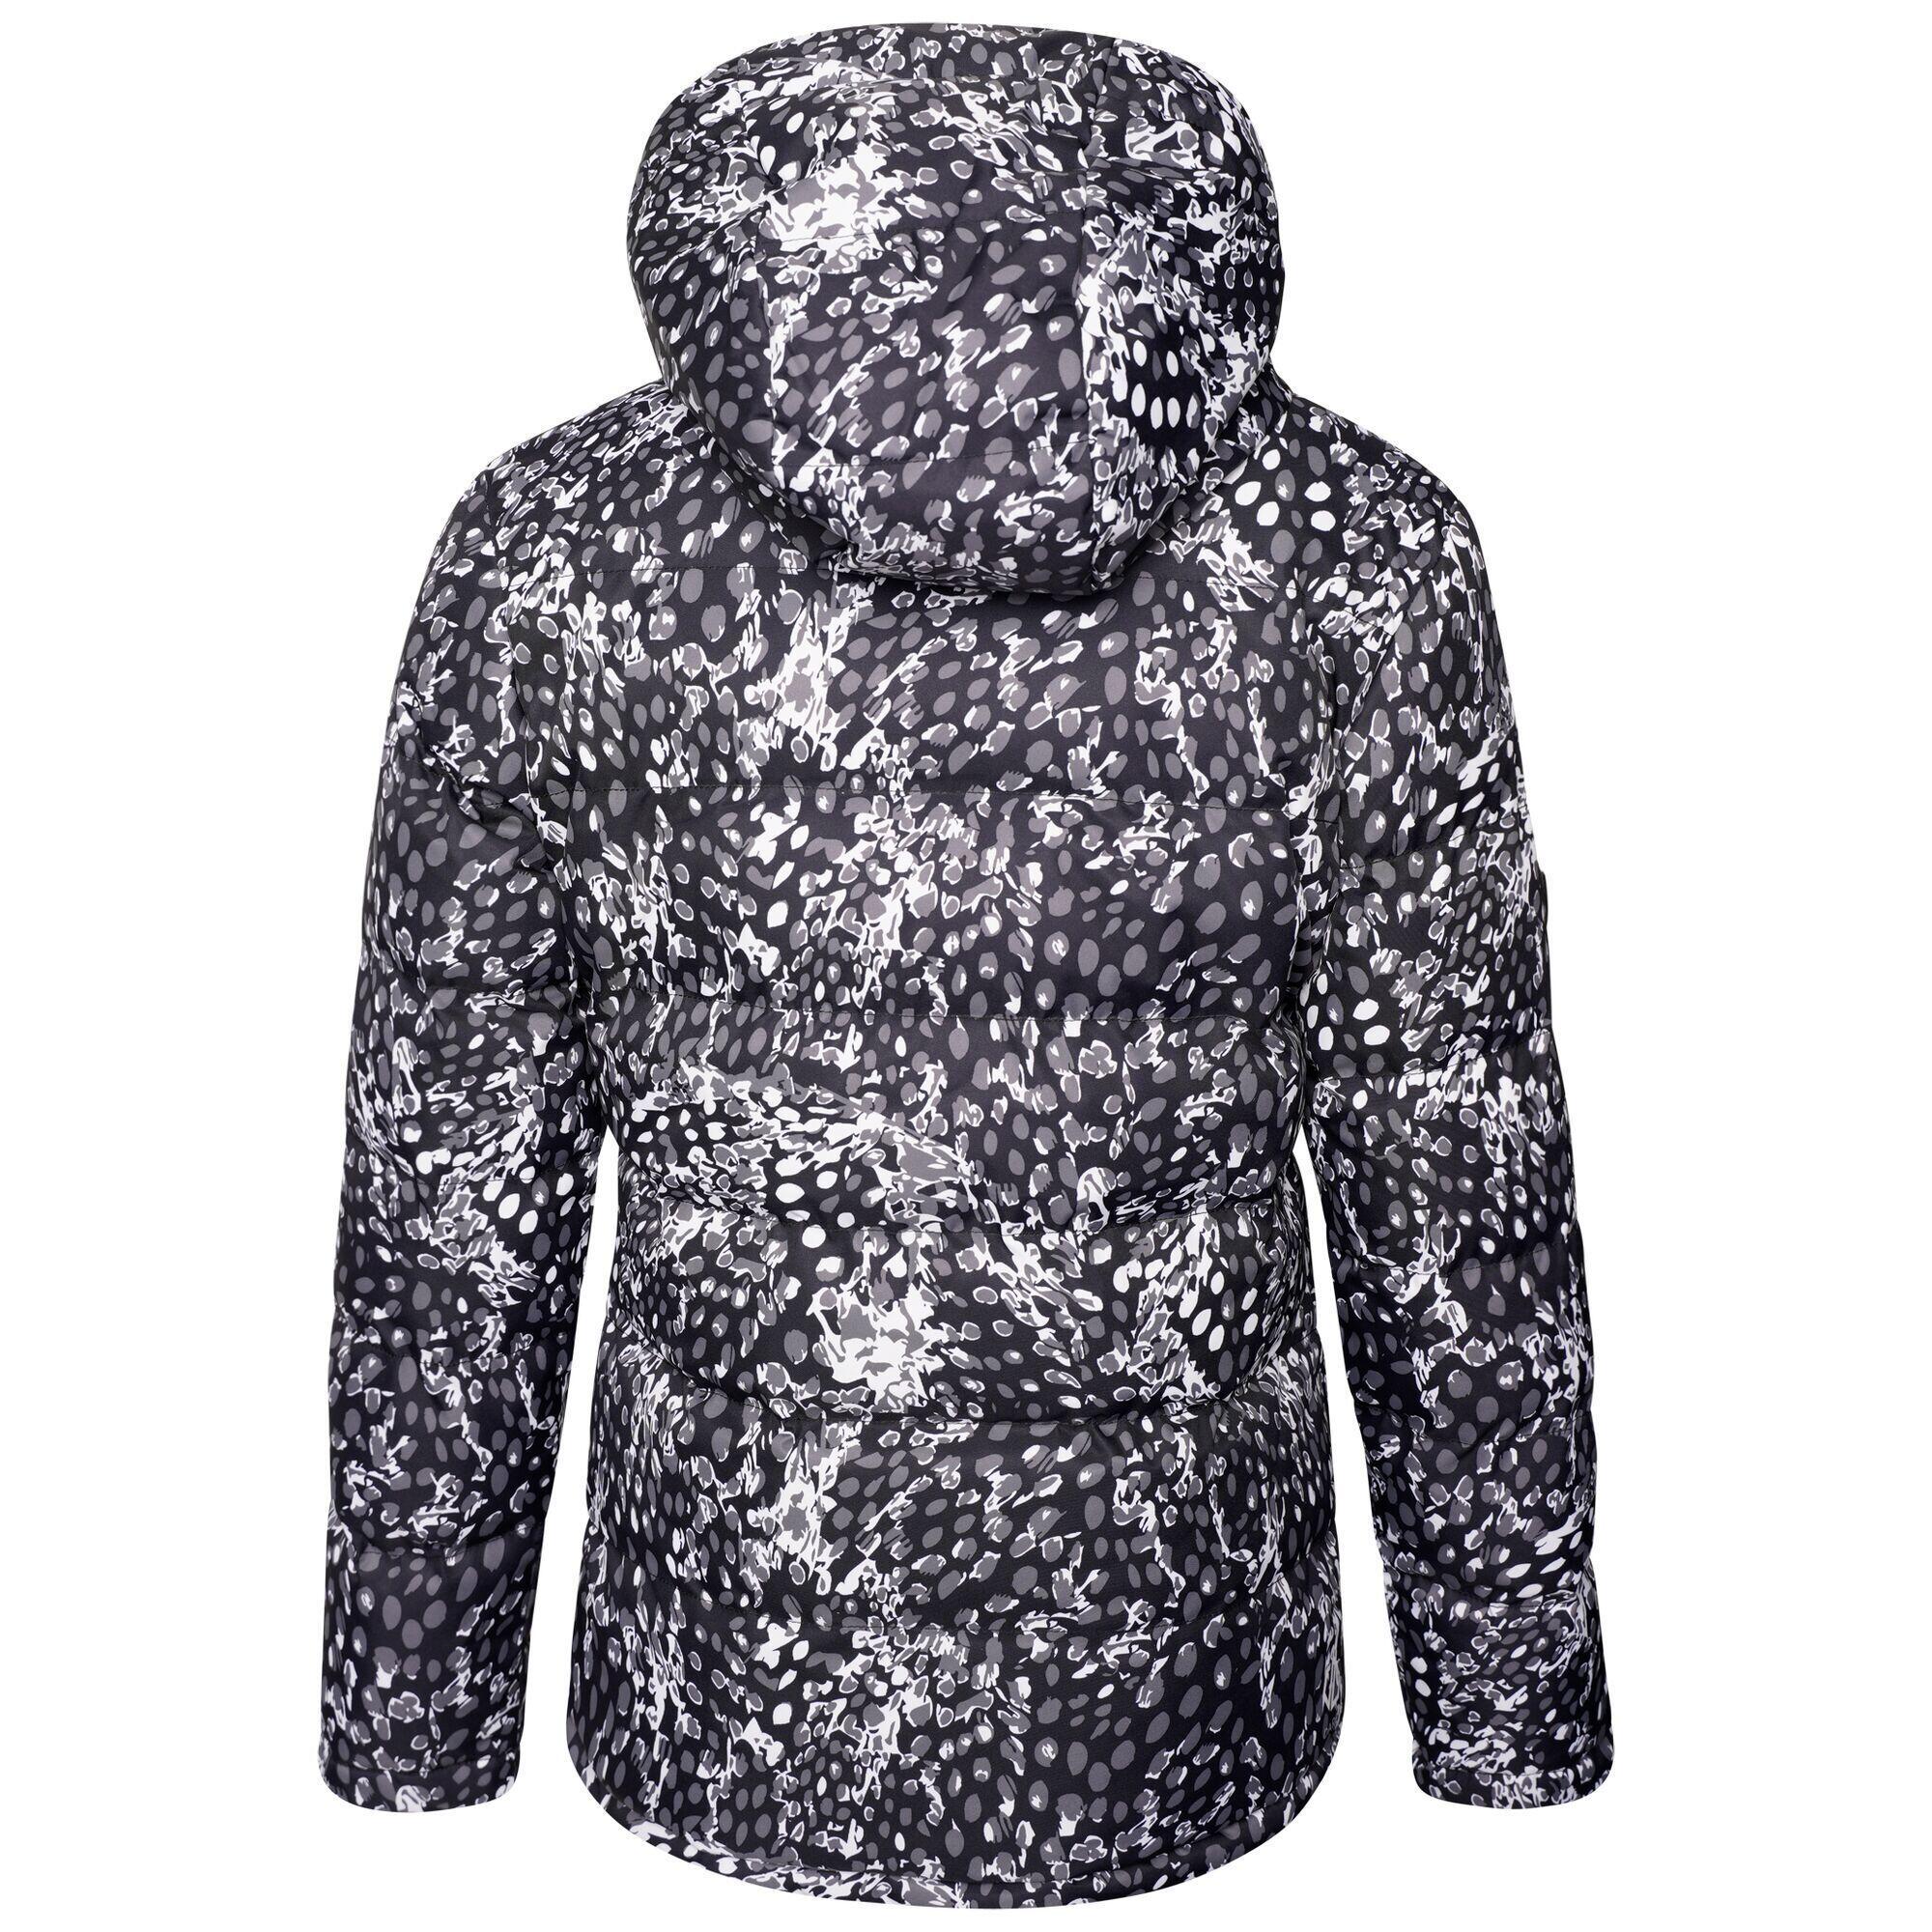 Girls Verdict Leopard Print Insulated Ski Jacket (Black/White) 2/5